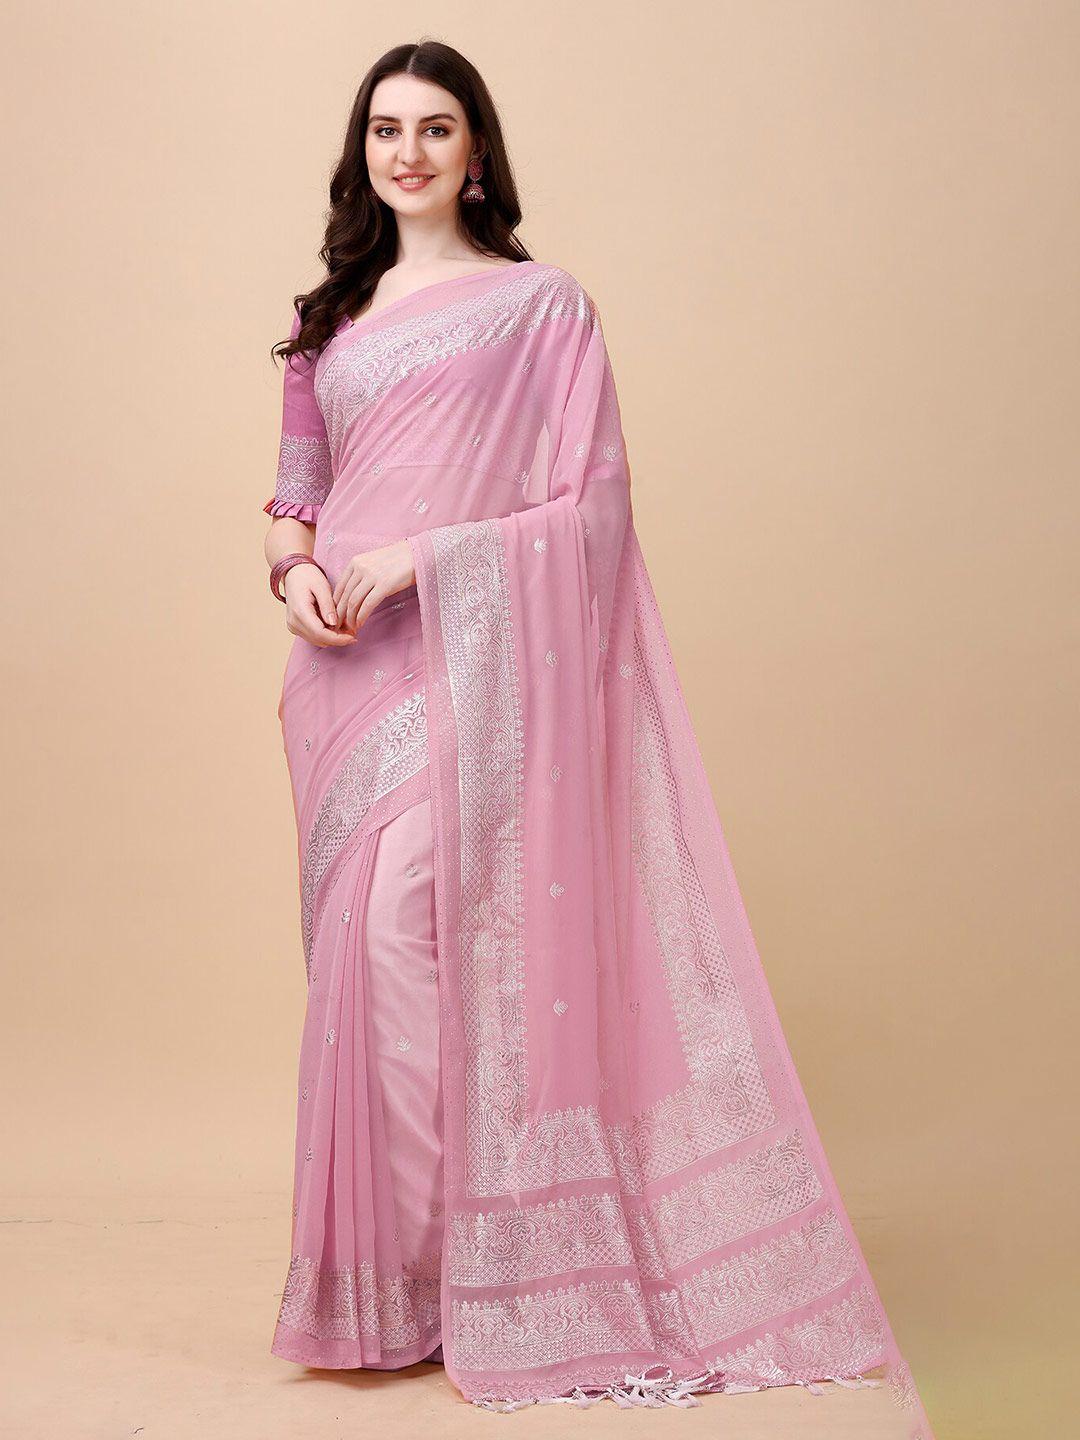 anjaneya sarees pink & silver-toned ethnic motifs silk blend banarasi saree